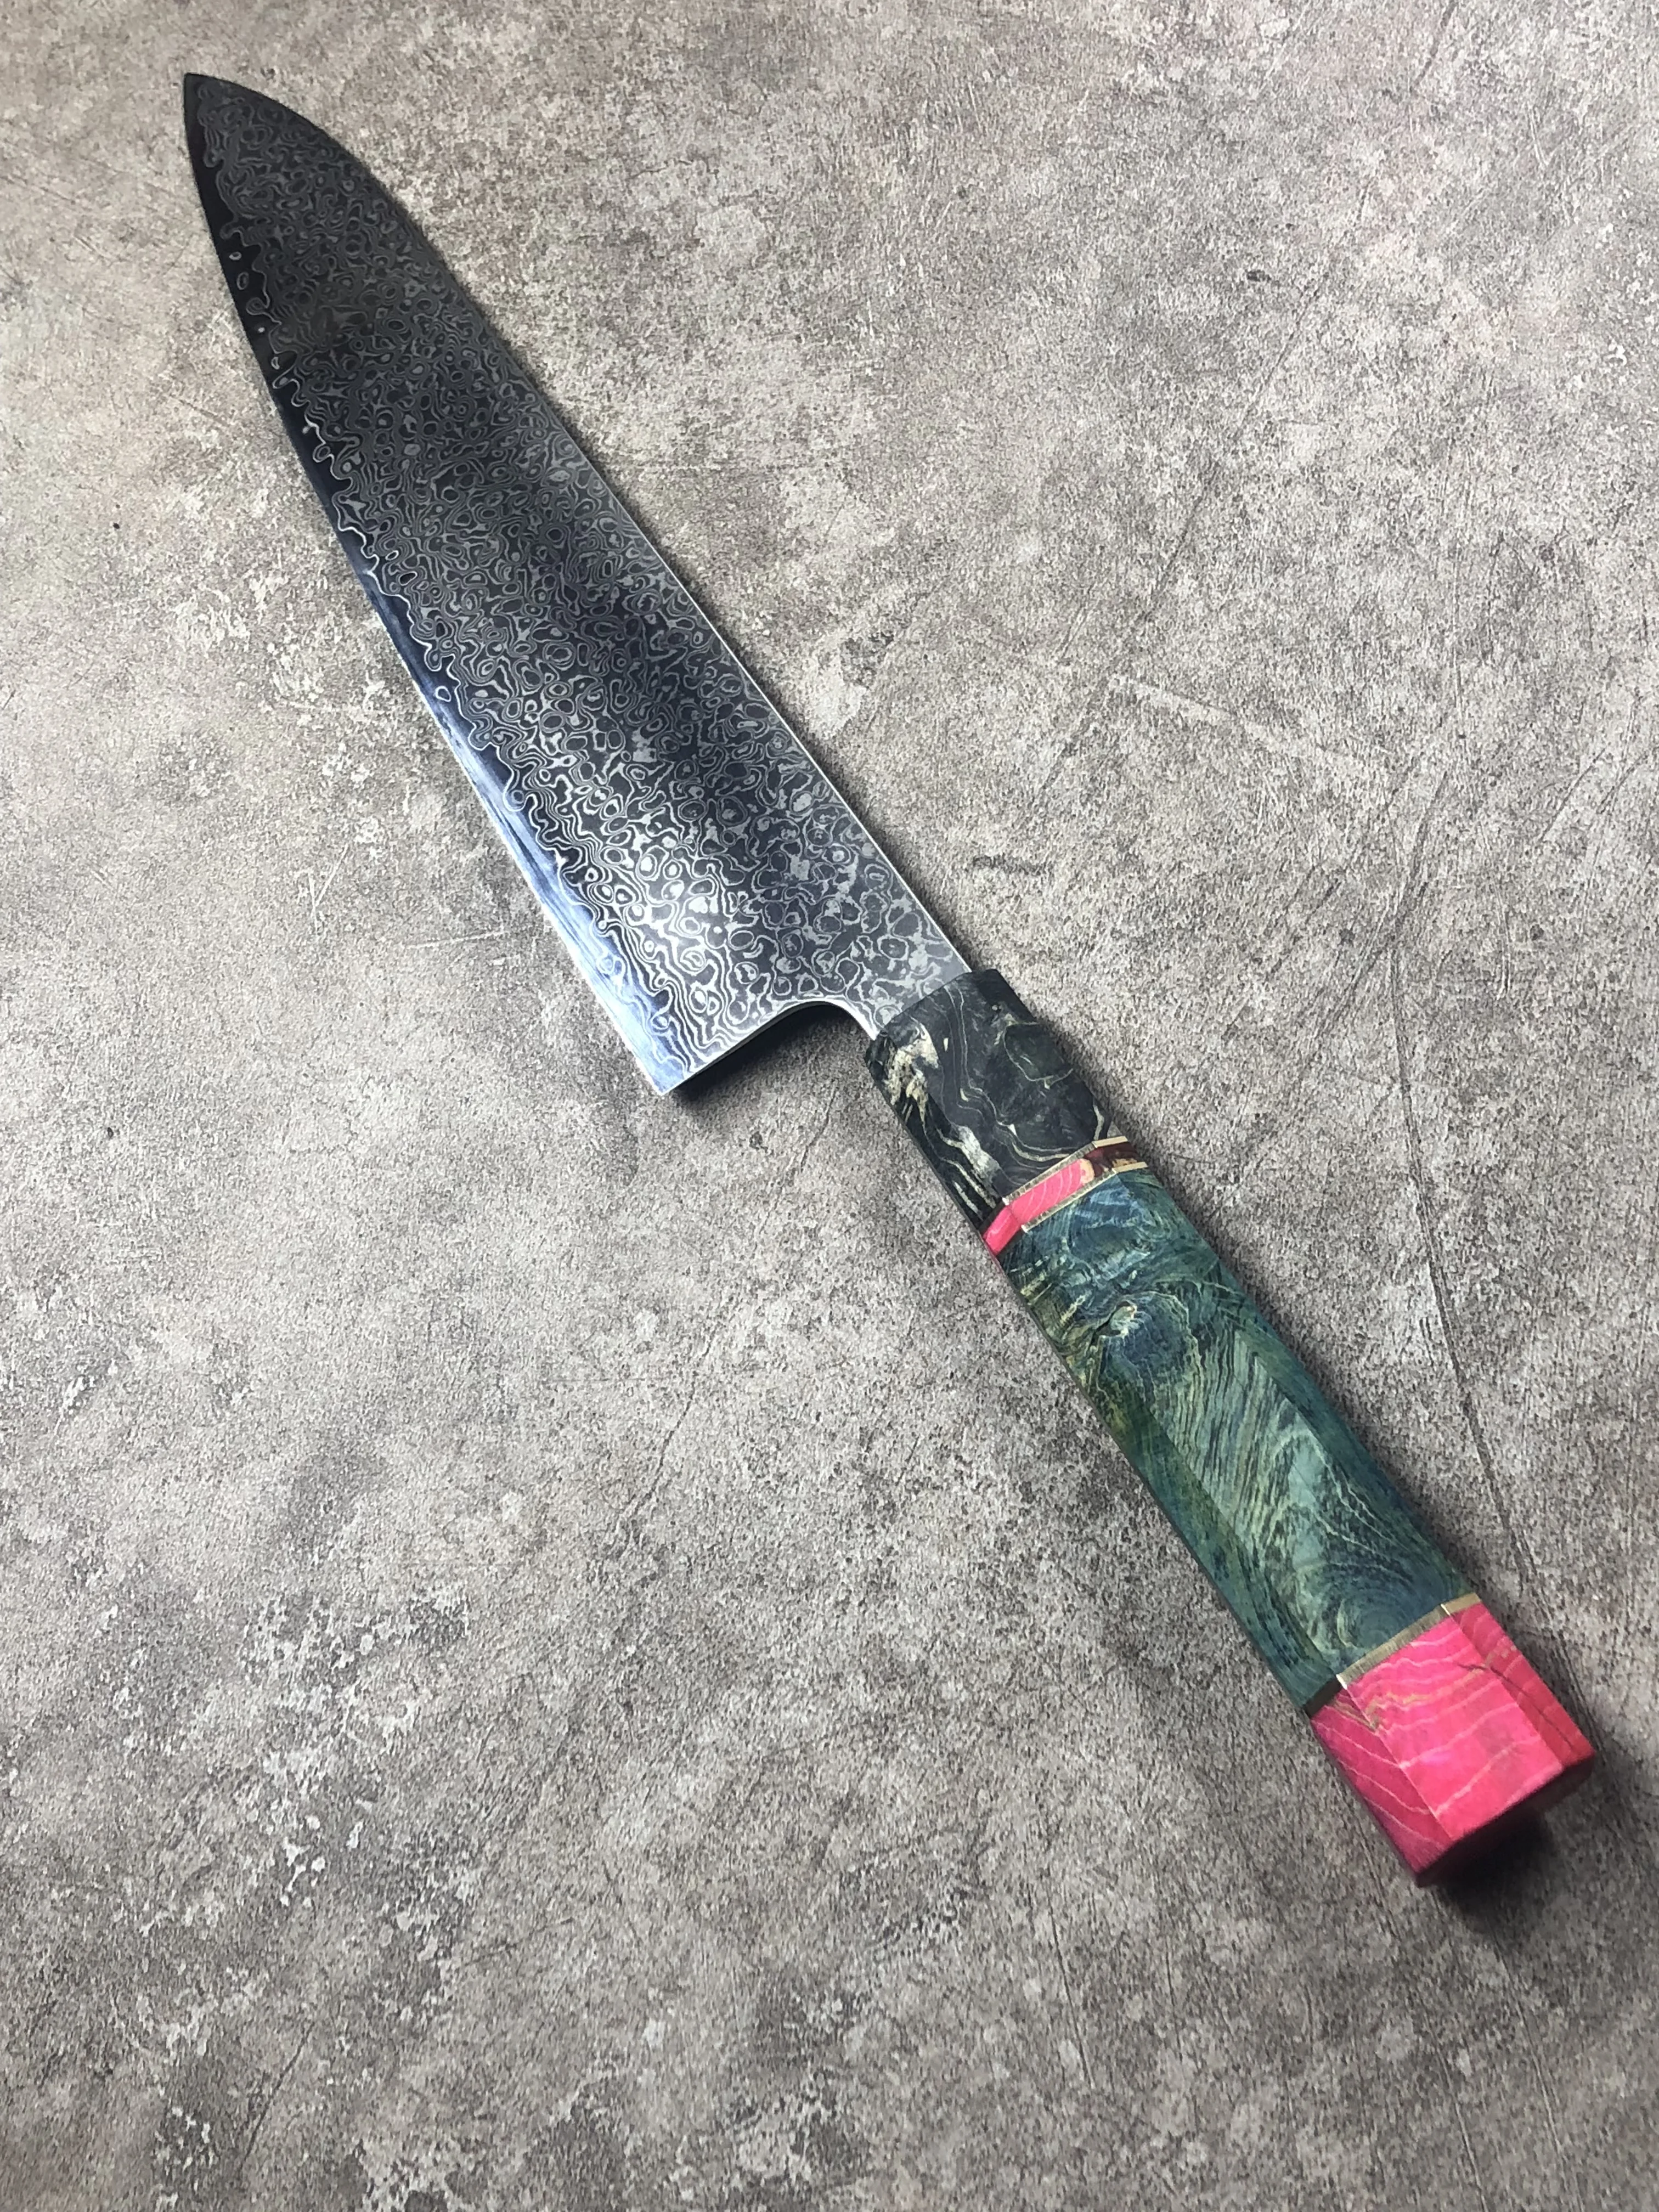 8 ''профессиональный нож шеф-повара Gyuto японский дамасский кухонный нож из нержавеющей стали очень острые кухонные ножи с деревянной ручкой